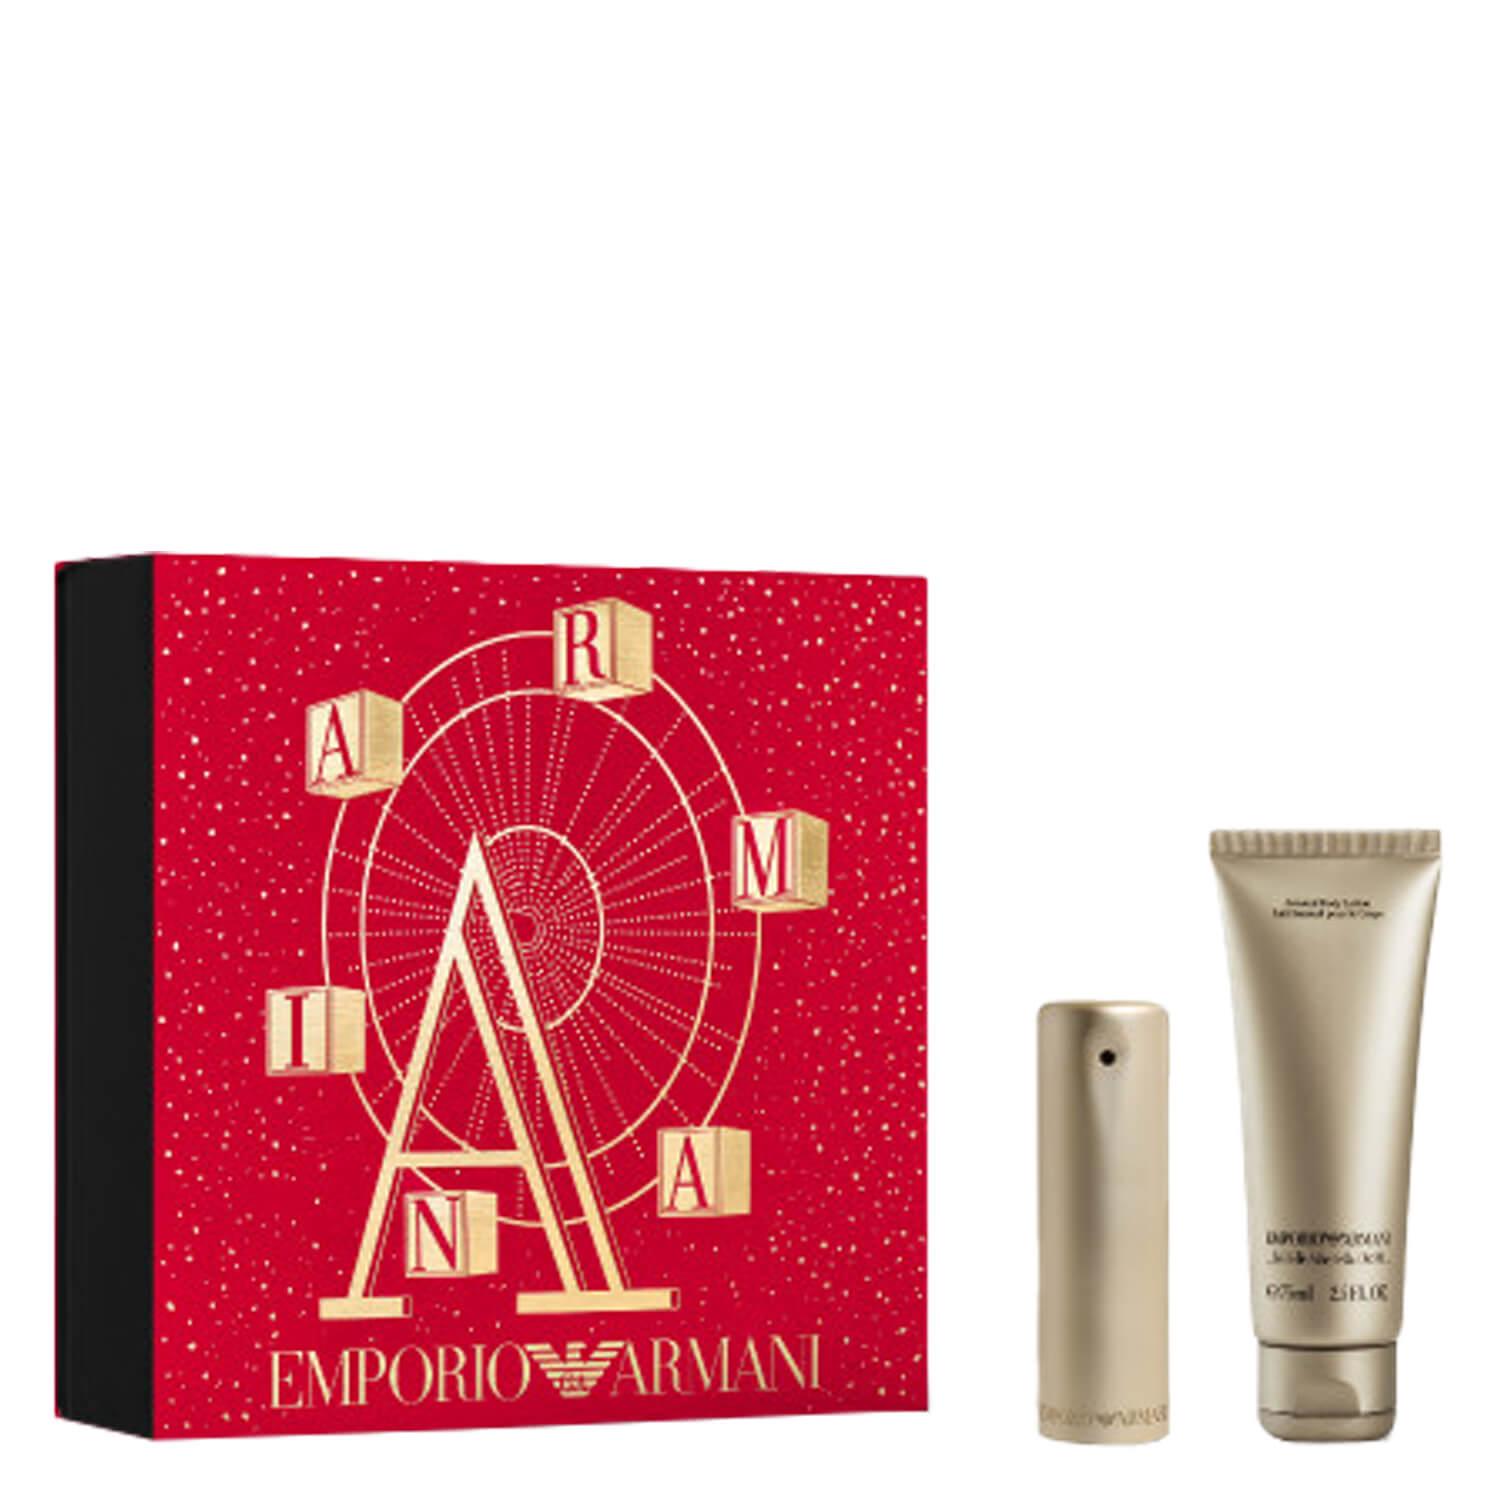 Emporio Armani - She Eau de Parfum Set